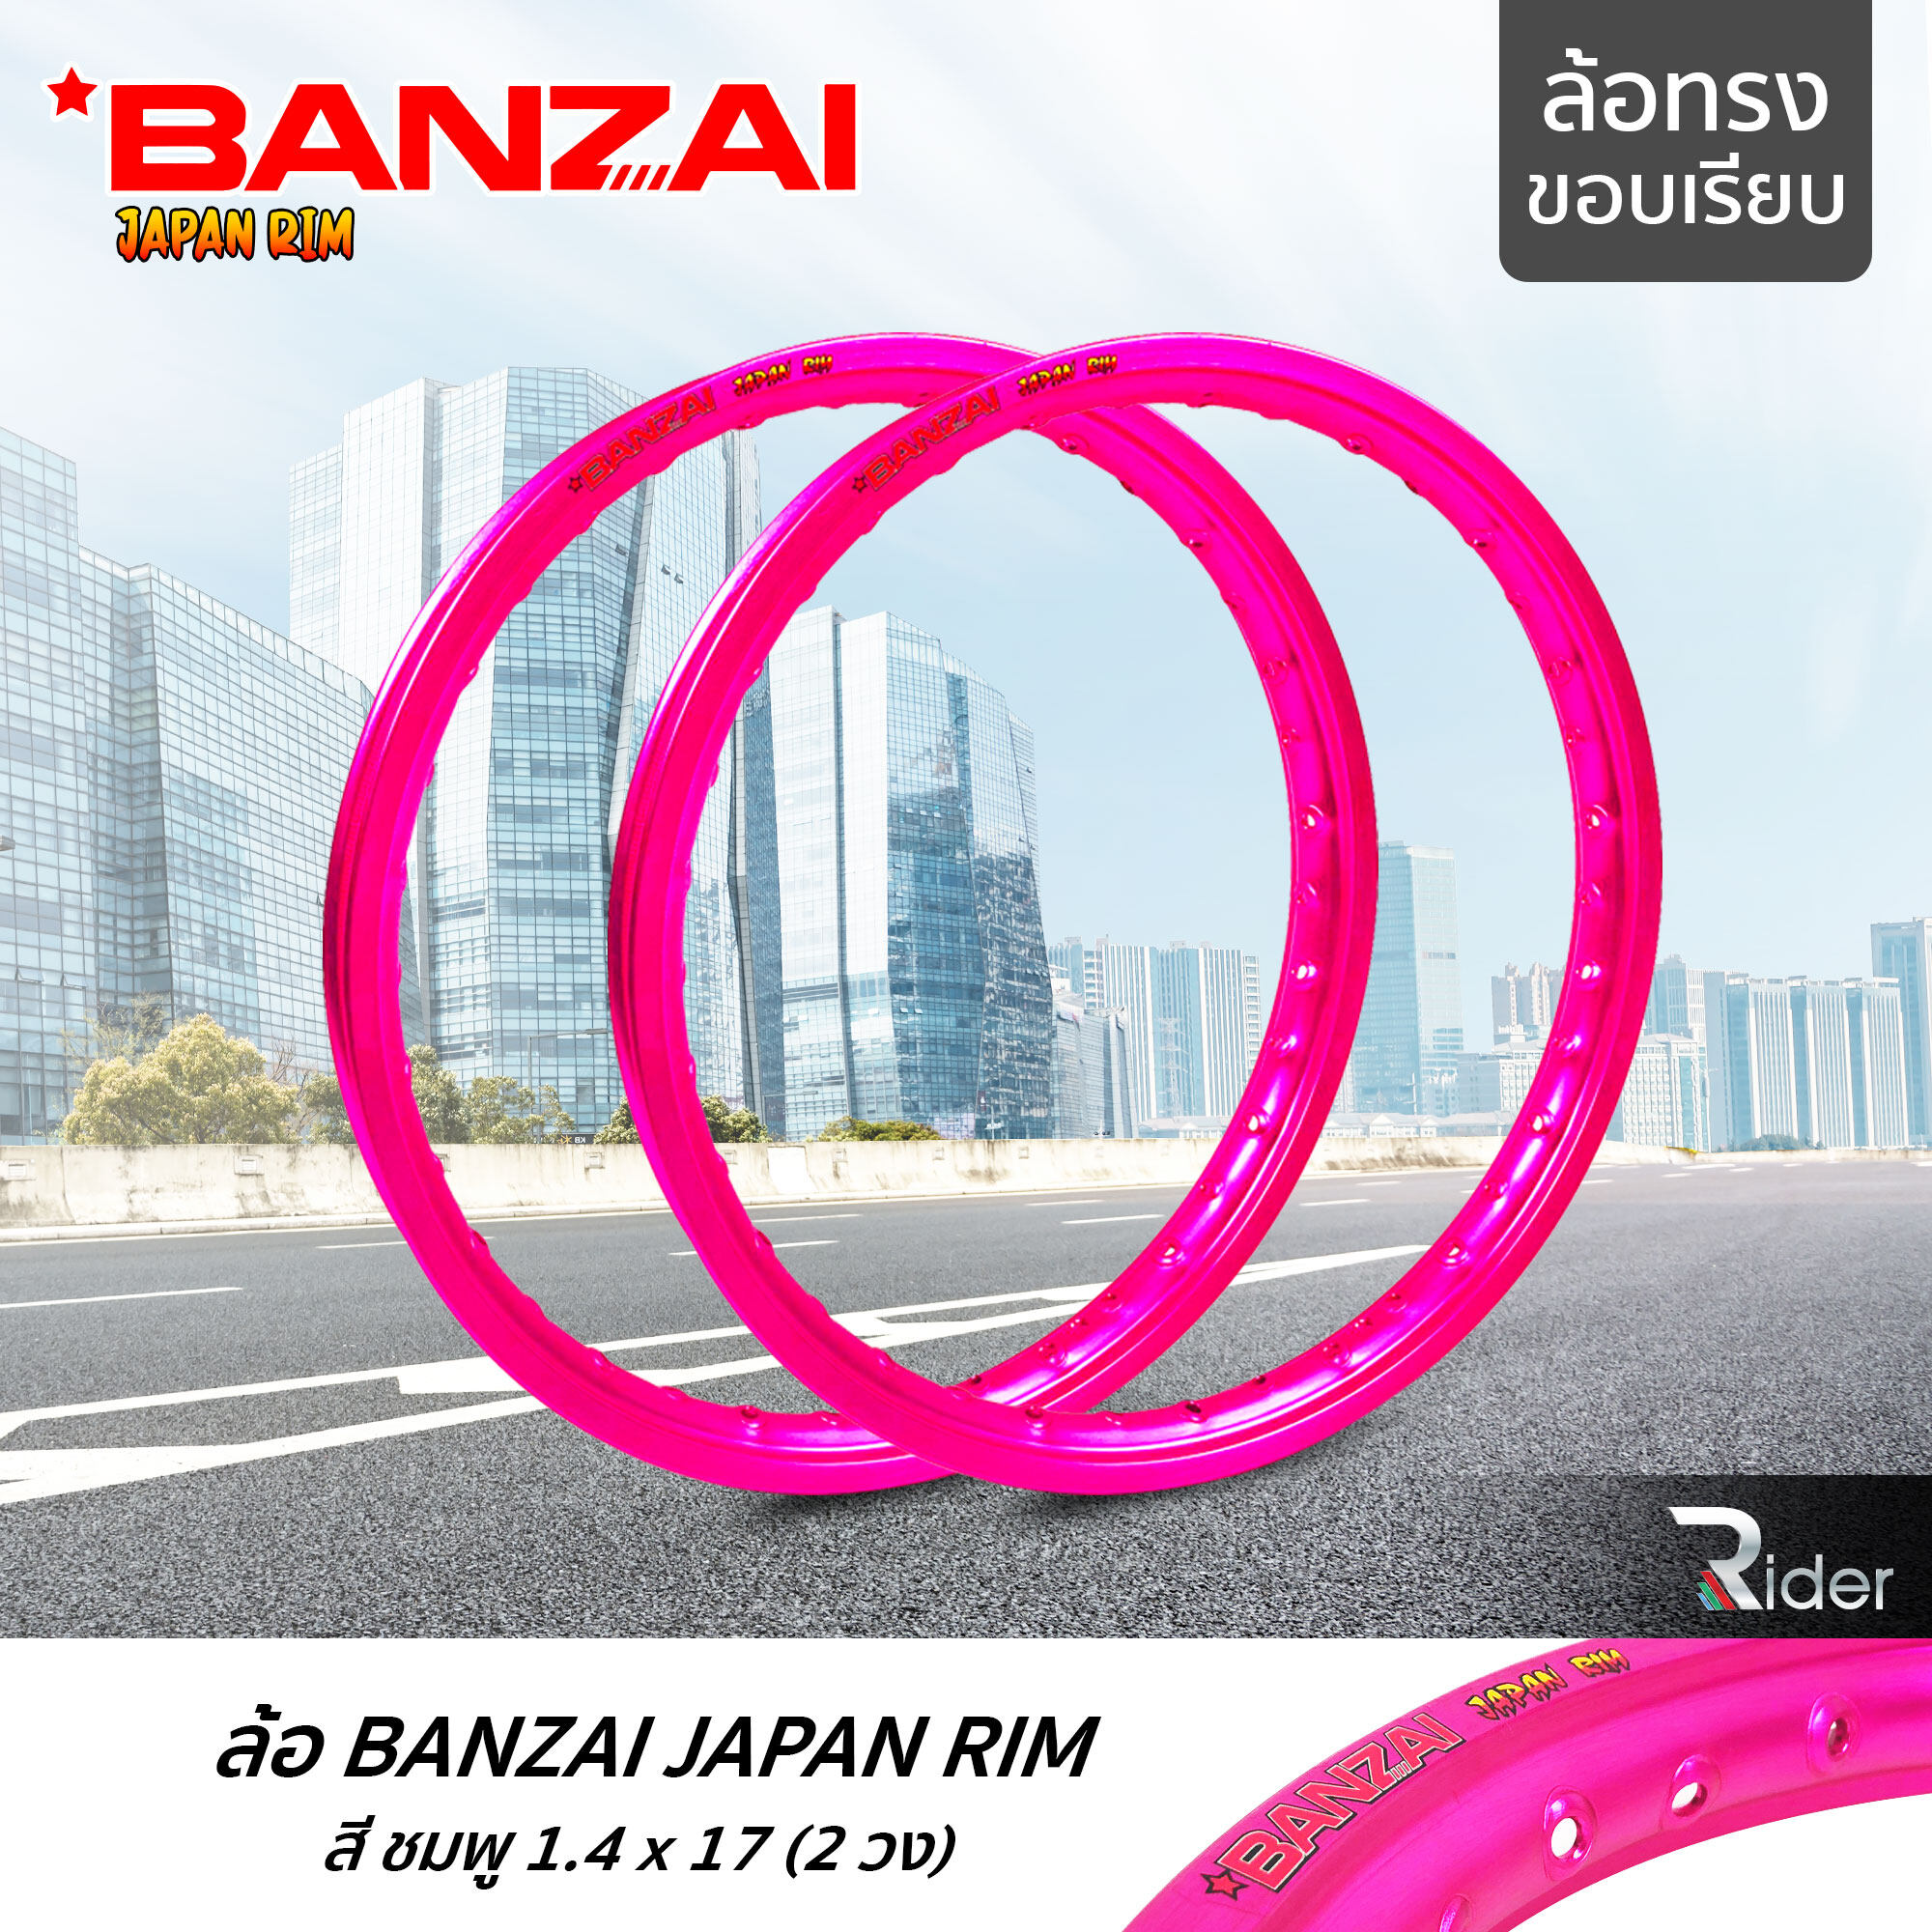 BANZAI ล้อขอบ 17 บันไซ รุ่น JAPAN RIM 1.4 ขอบ17 นิ้ว ล้อทรงขอบเรียบ แพ็คคู่ 2 วง วัสดุอลูมิเนียม ของแท้ รถจักรยานยนต์ สี ชมพู